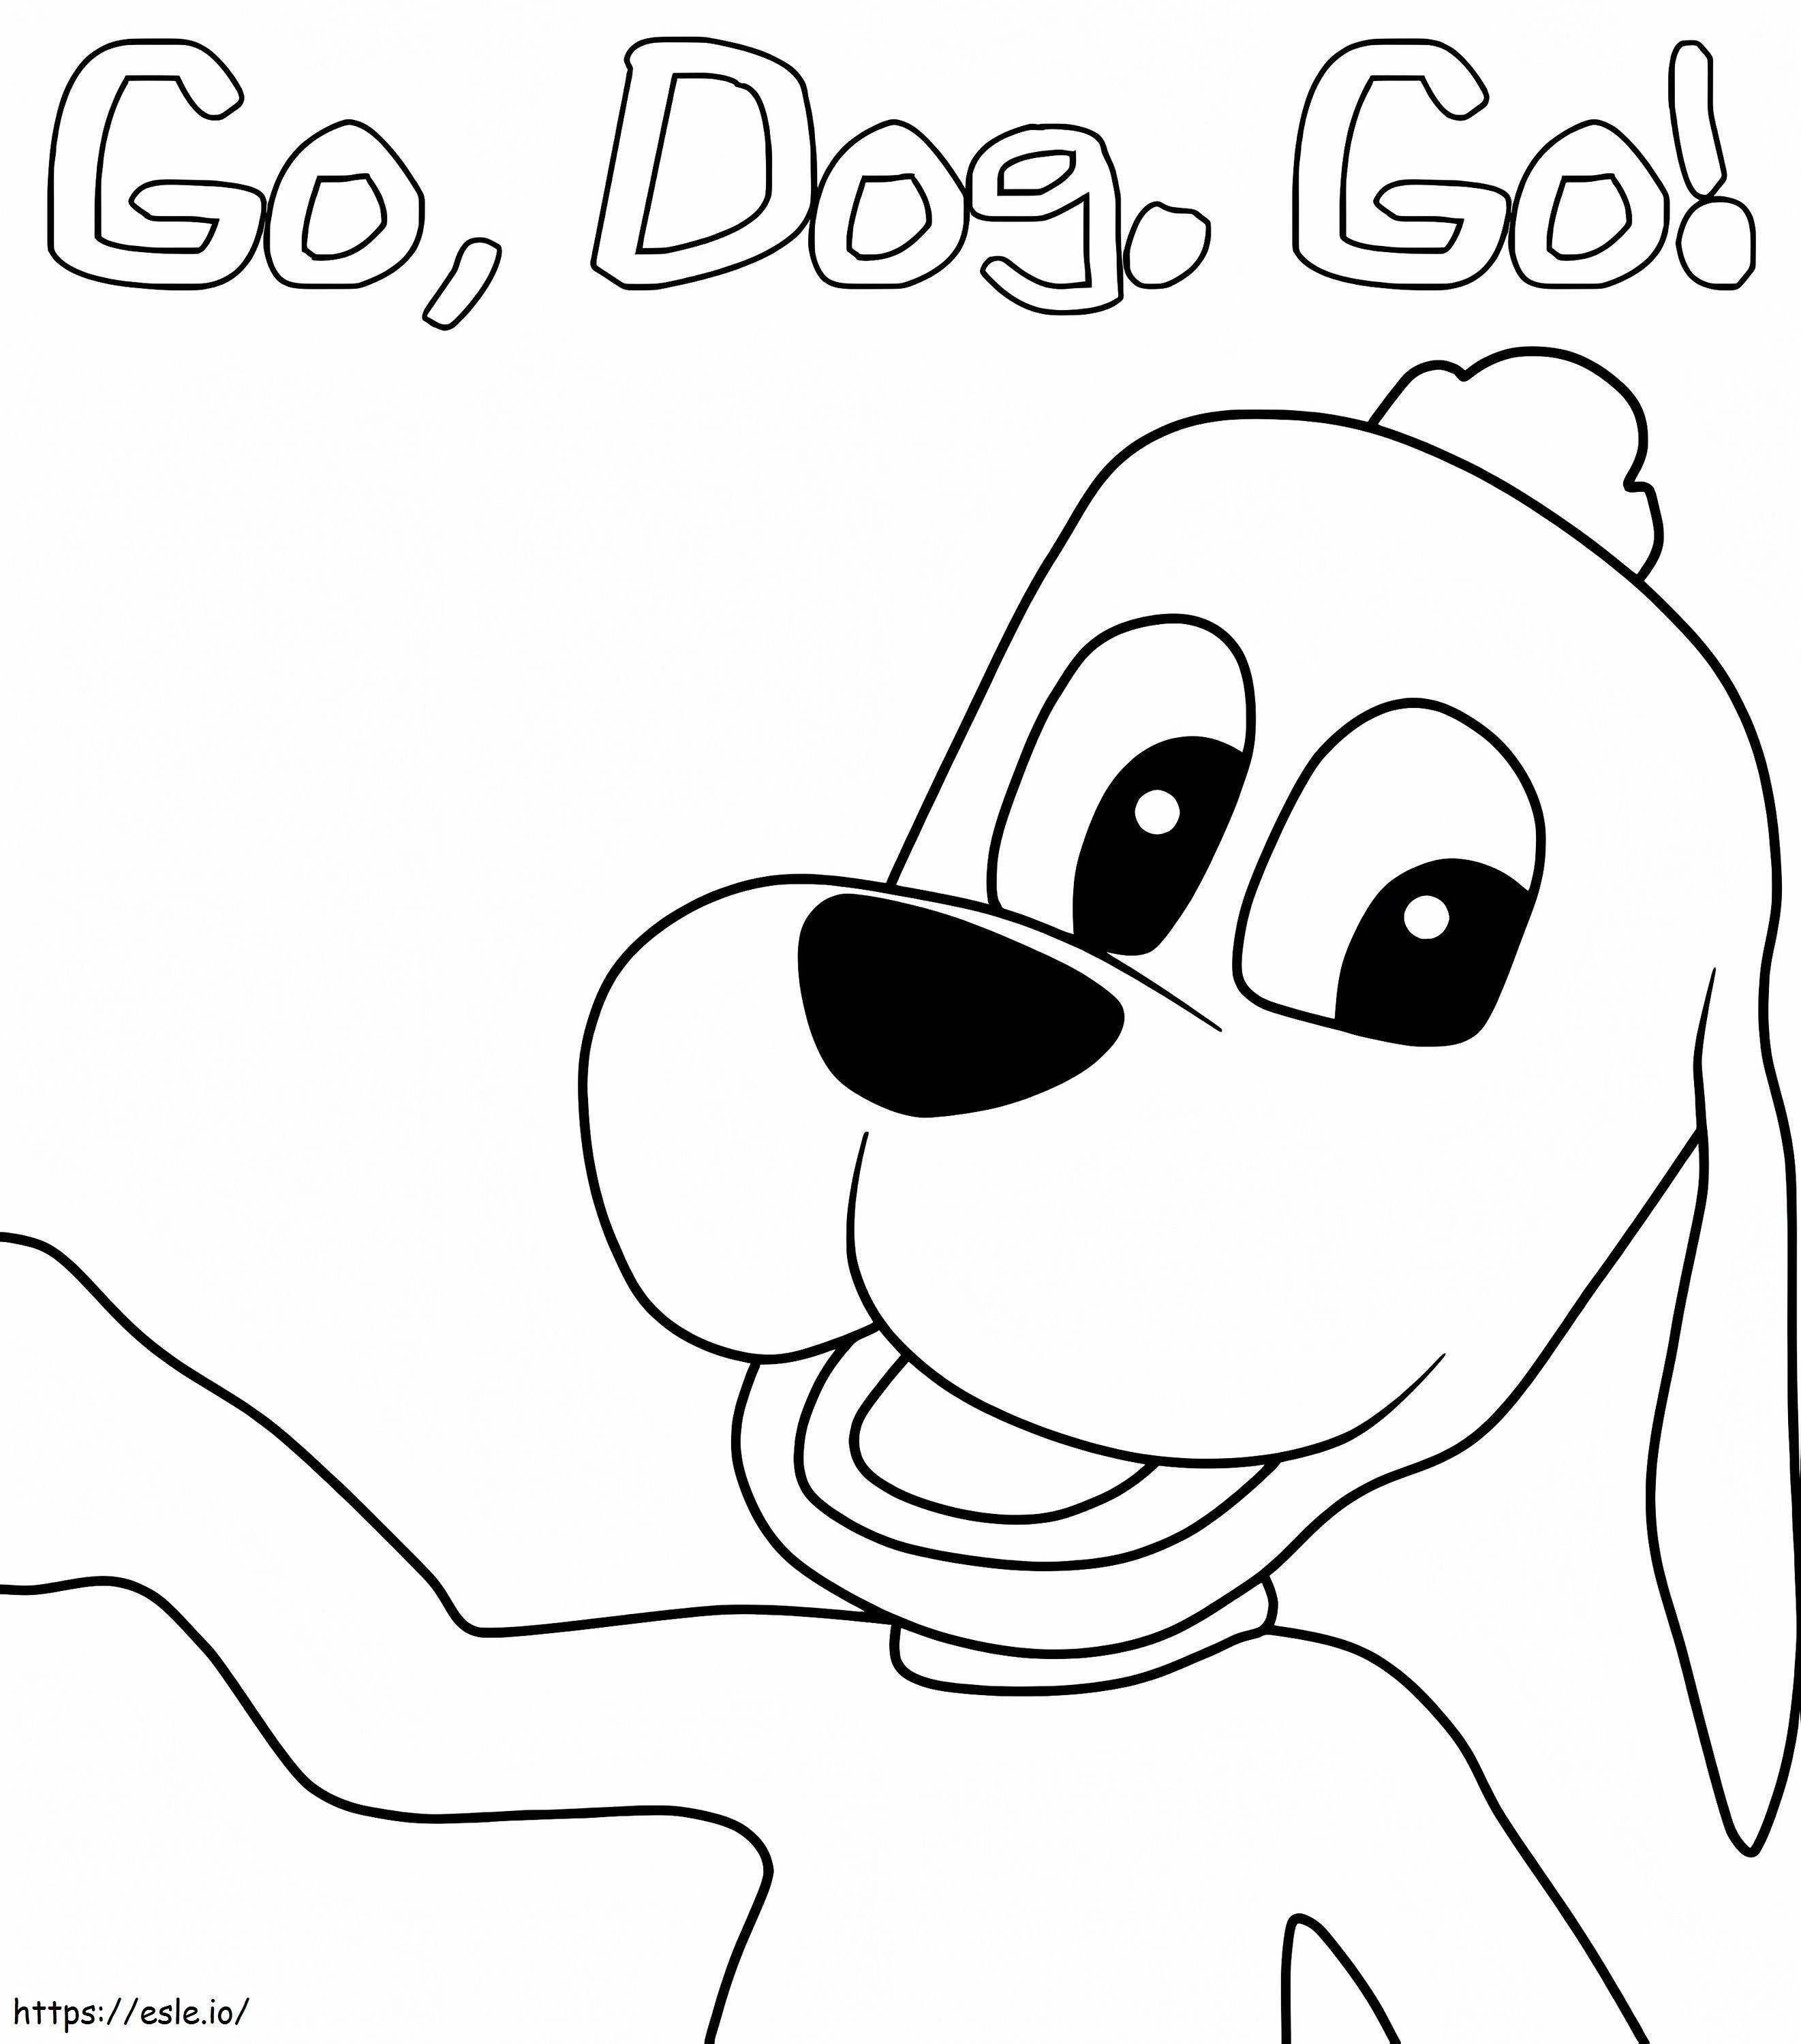 Etichetați Barker de la Go Dog Go de colorat